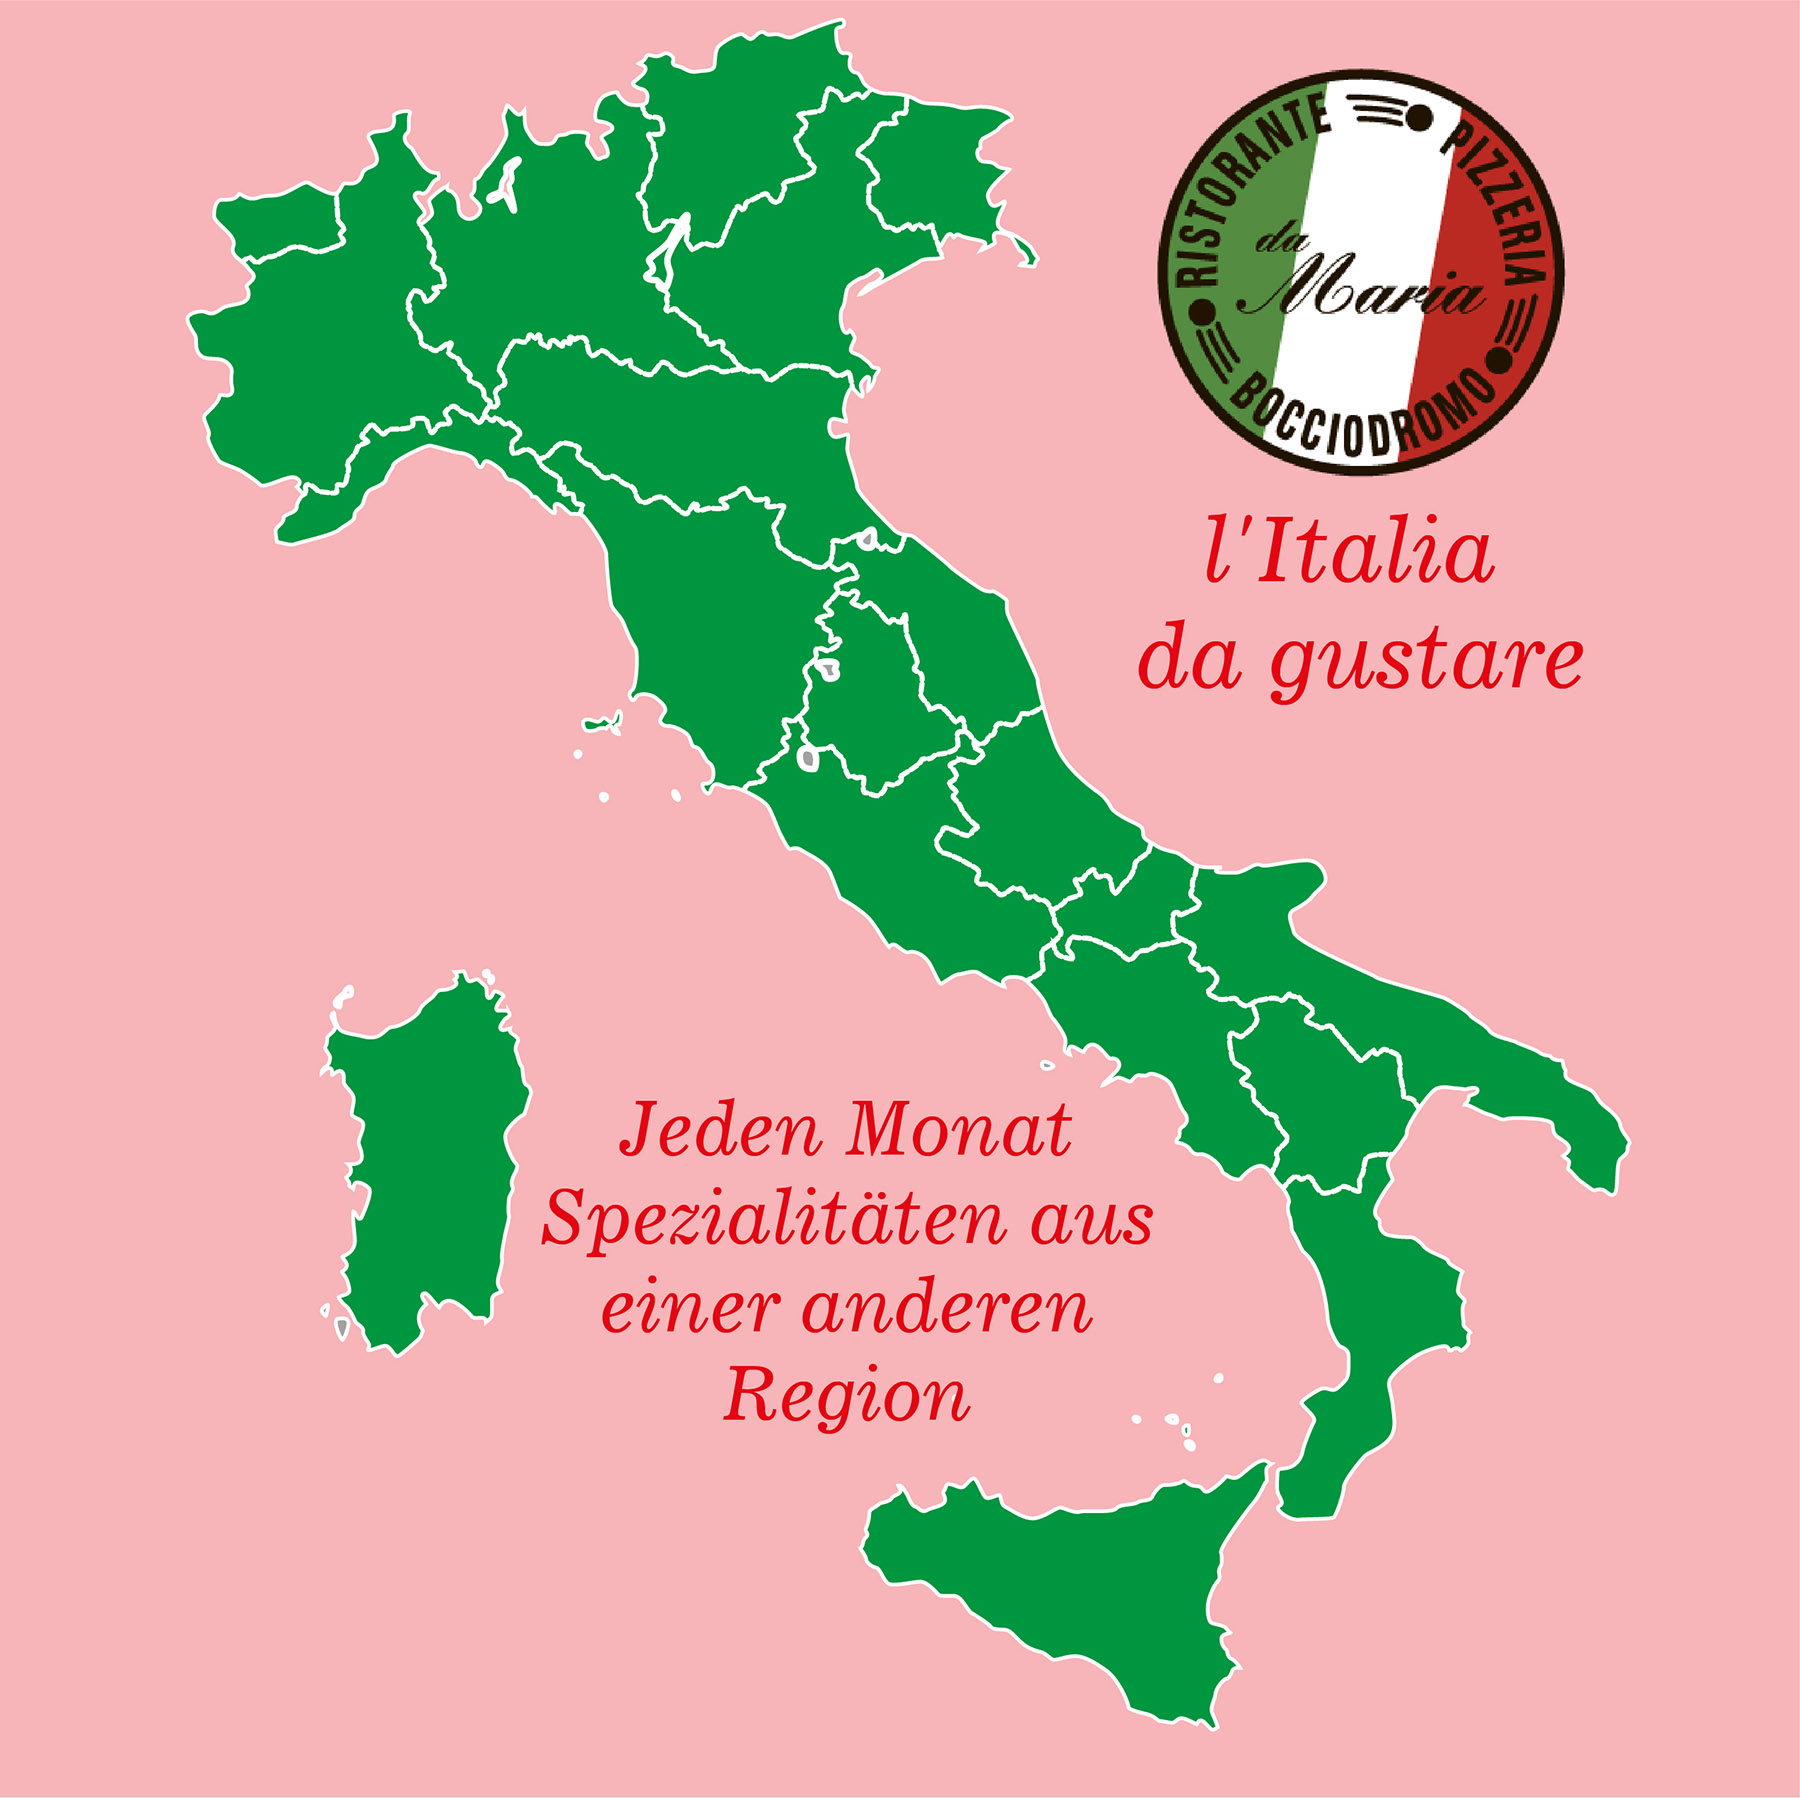 L’Italia da gustare: Eine kulinarische Reise durch Italien!